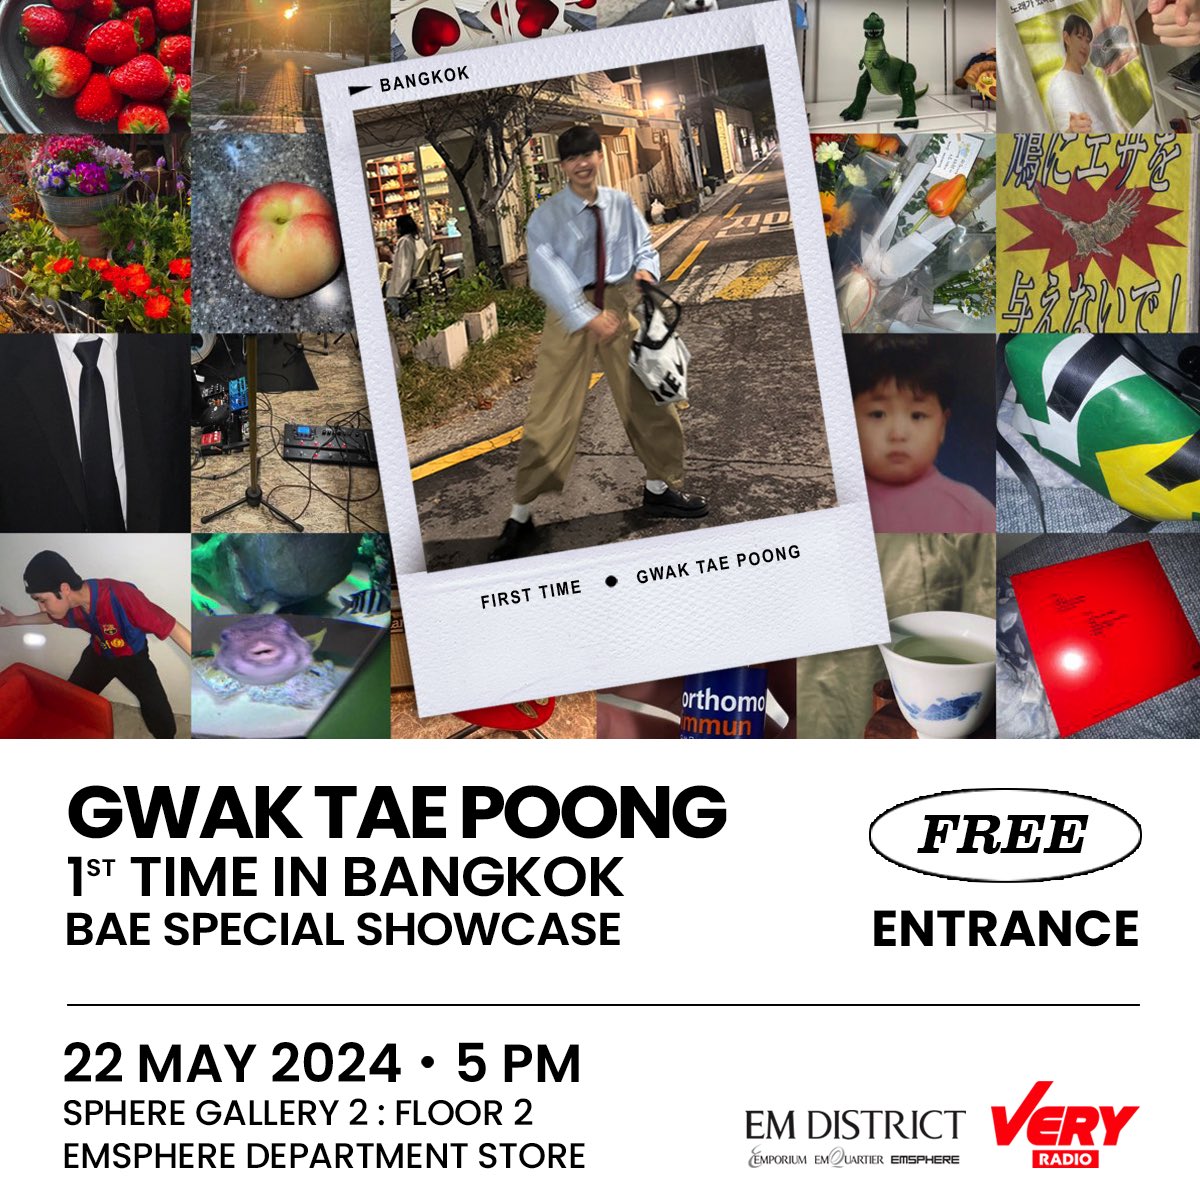 #ชมฟรี Gwak Tae Poong ดาวรุ่ง K-Indie คลื่นลูกใหม่ เจ้าของเพลงบอกรักสุด romantic อย่าง “BAE” ซึ่งจะลัดฟ้ามาแสดงครั้งแรกในไทยกับ Gwak Tae Poong : 1st Time In Bangkok ‘Bae Special Showcase วันพุธที่ 22 พ.ค. นี้ เข้าชมฟรี!! แล้วเจอกันที่ SPHERE GALLERY 2, Floor​ 2 ห้าง EMSPHERE ✨